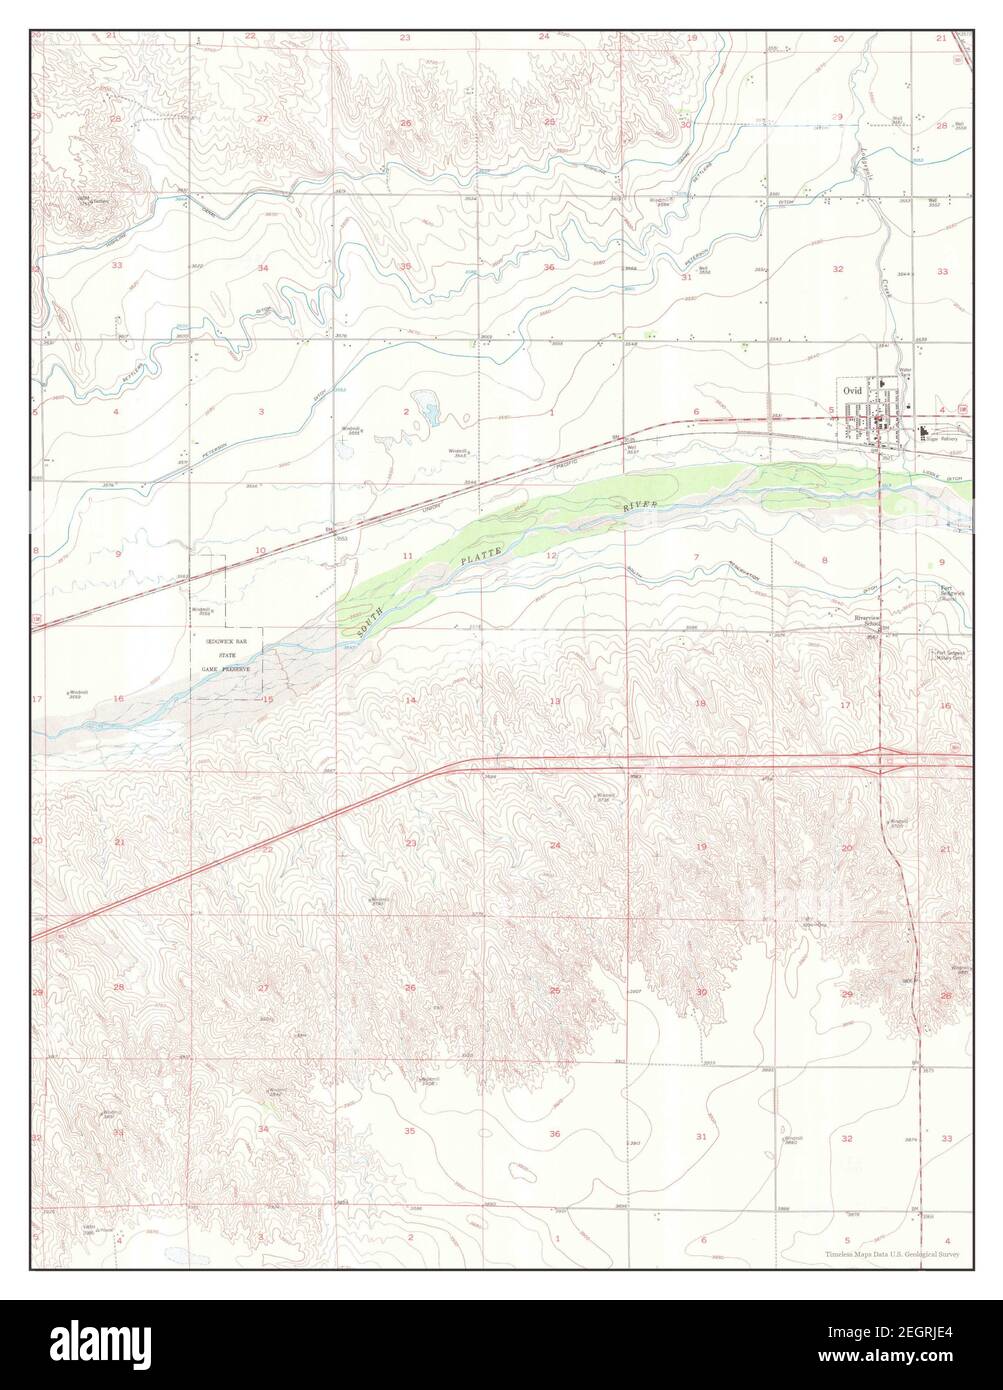 Ovid, Colorado, carte 1953, 1:24000, États-Unis d'Amérique par Timeless Maps, données U.S. Geological Survey Banque D'Images